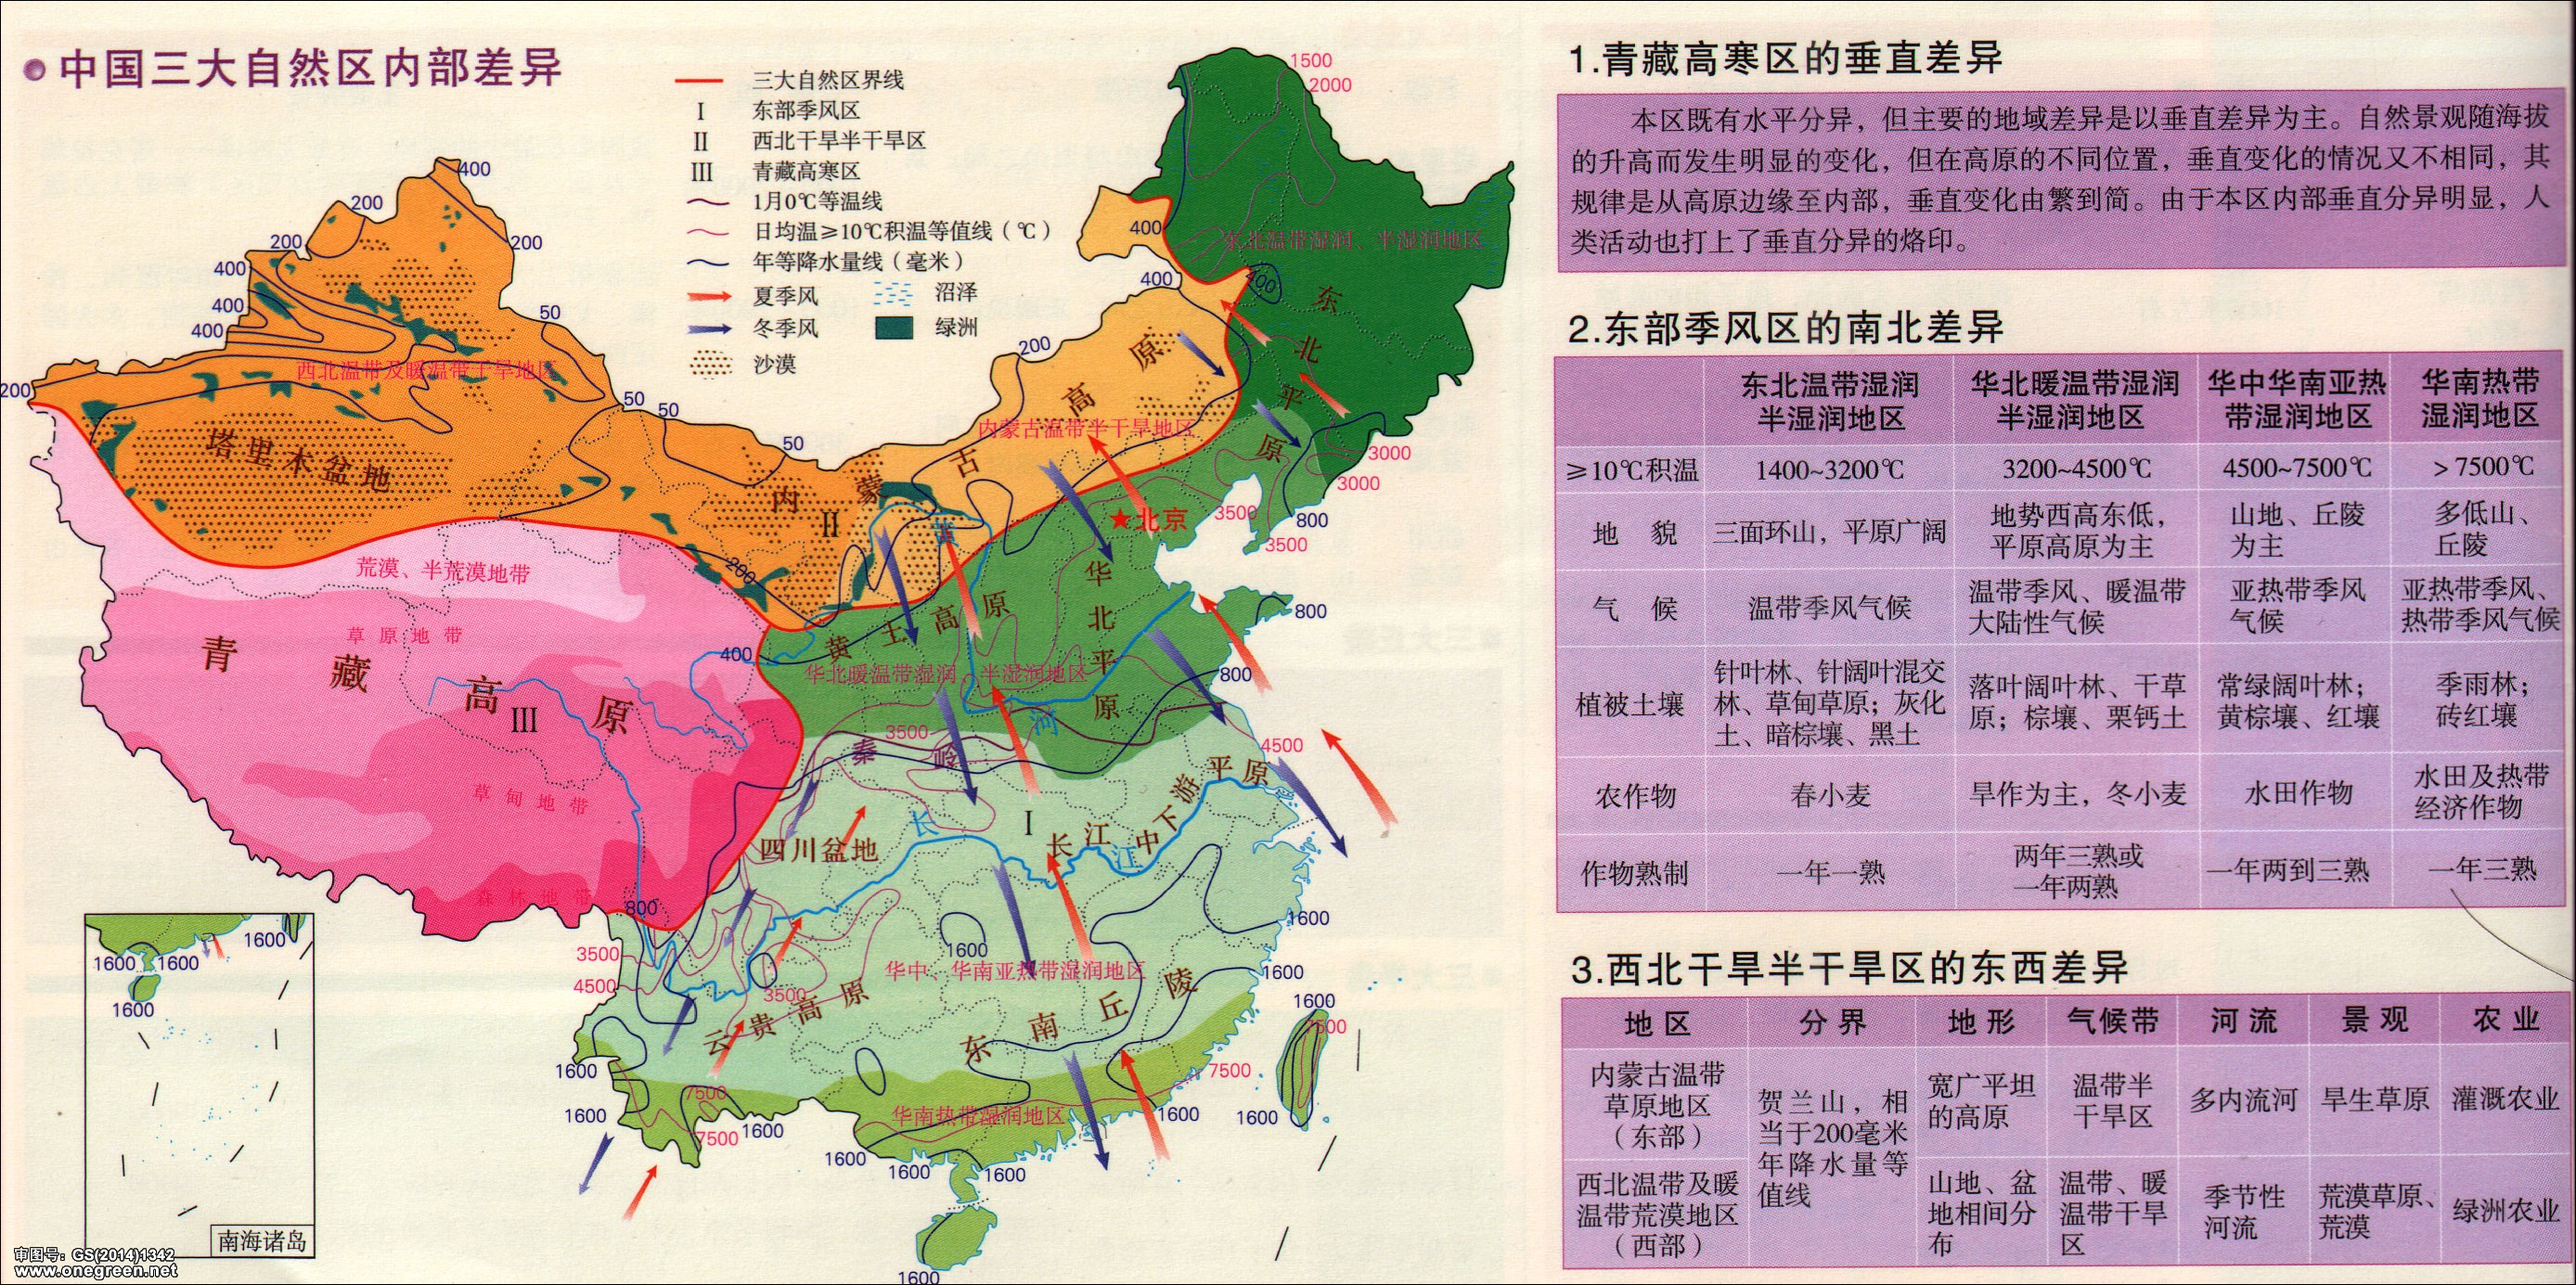 中国三大自然区内部差异